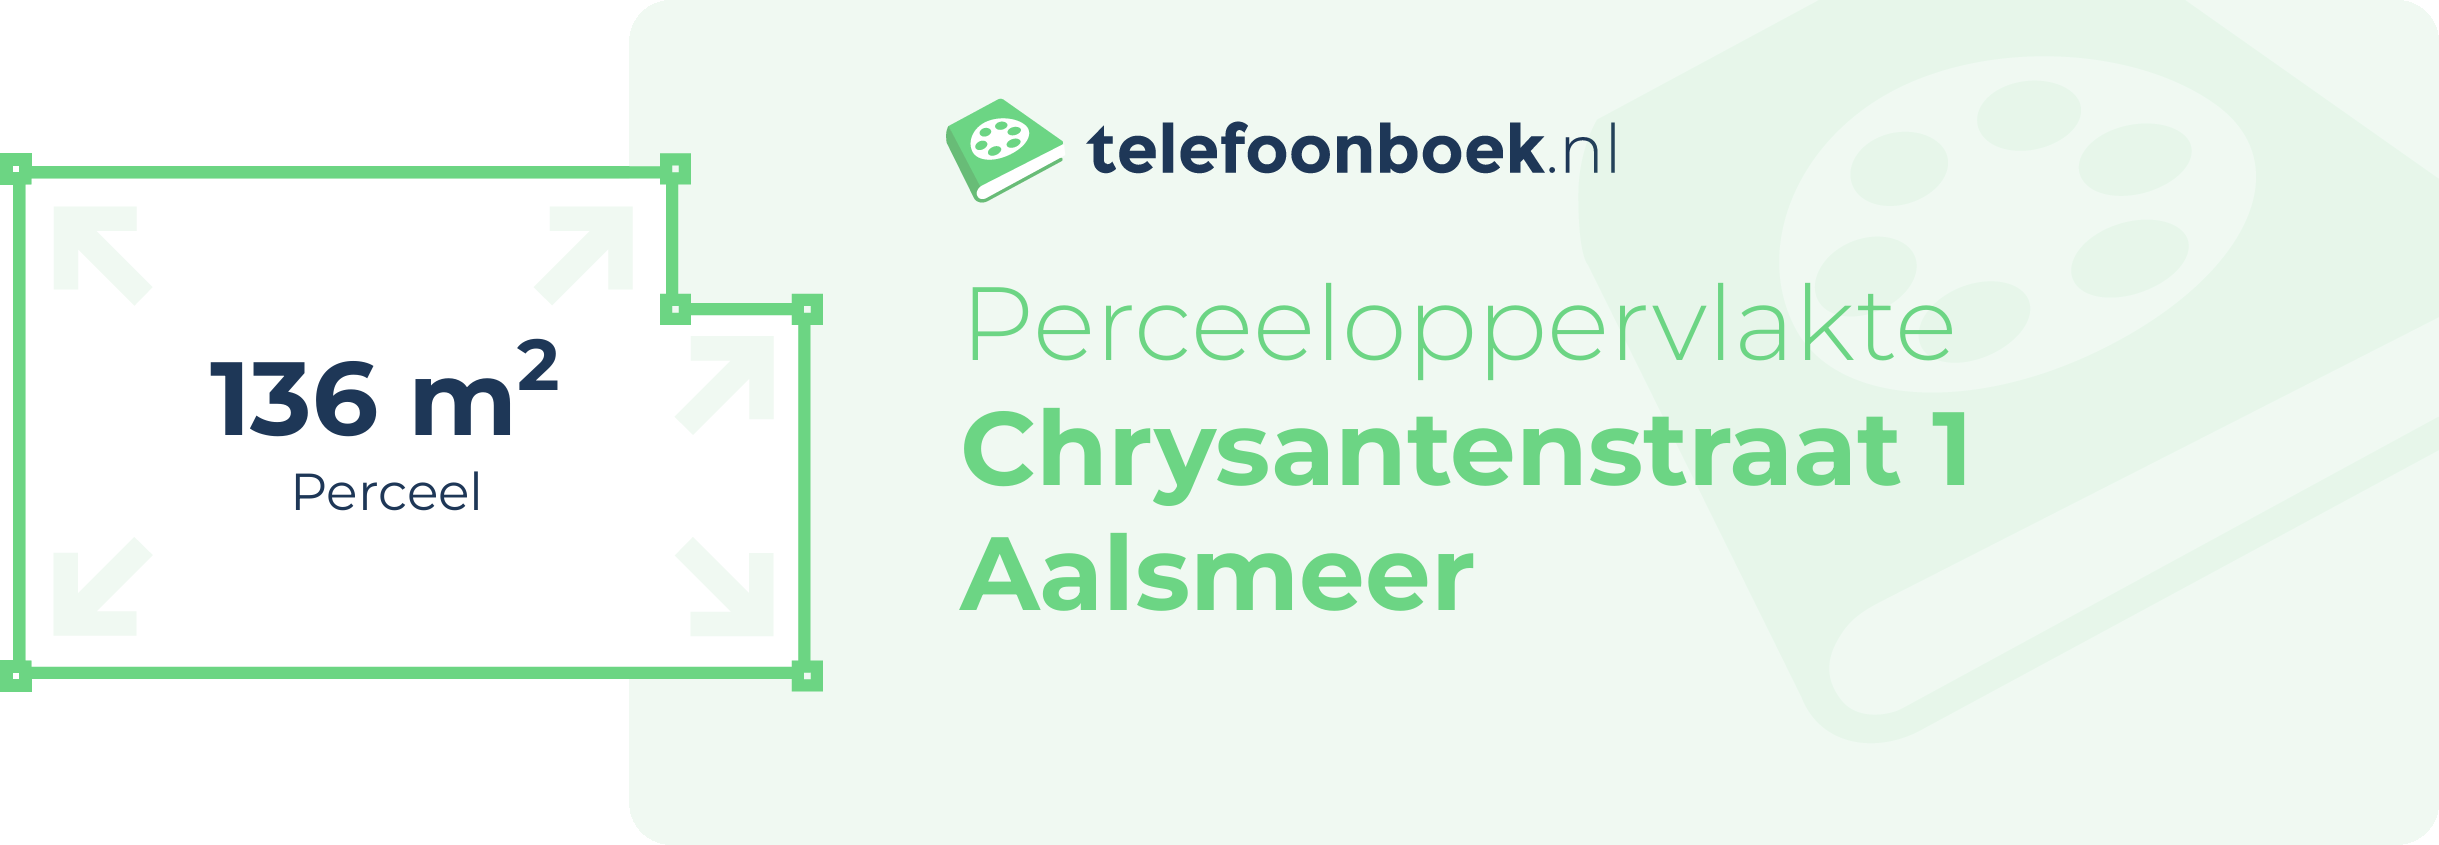 Perceeloppervlakte Chrysantenstraat 1 Aalsmeer